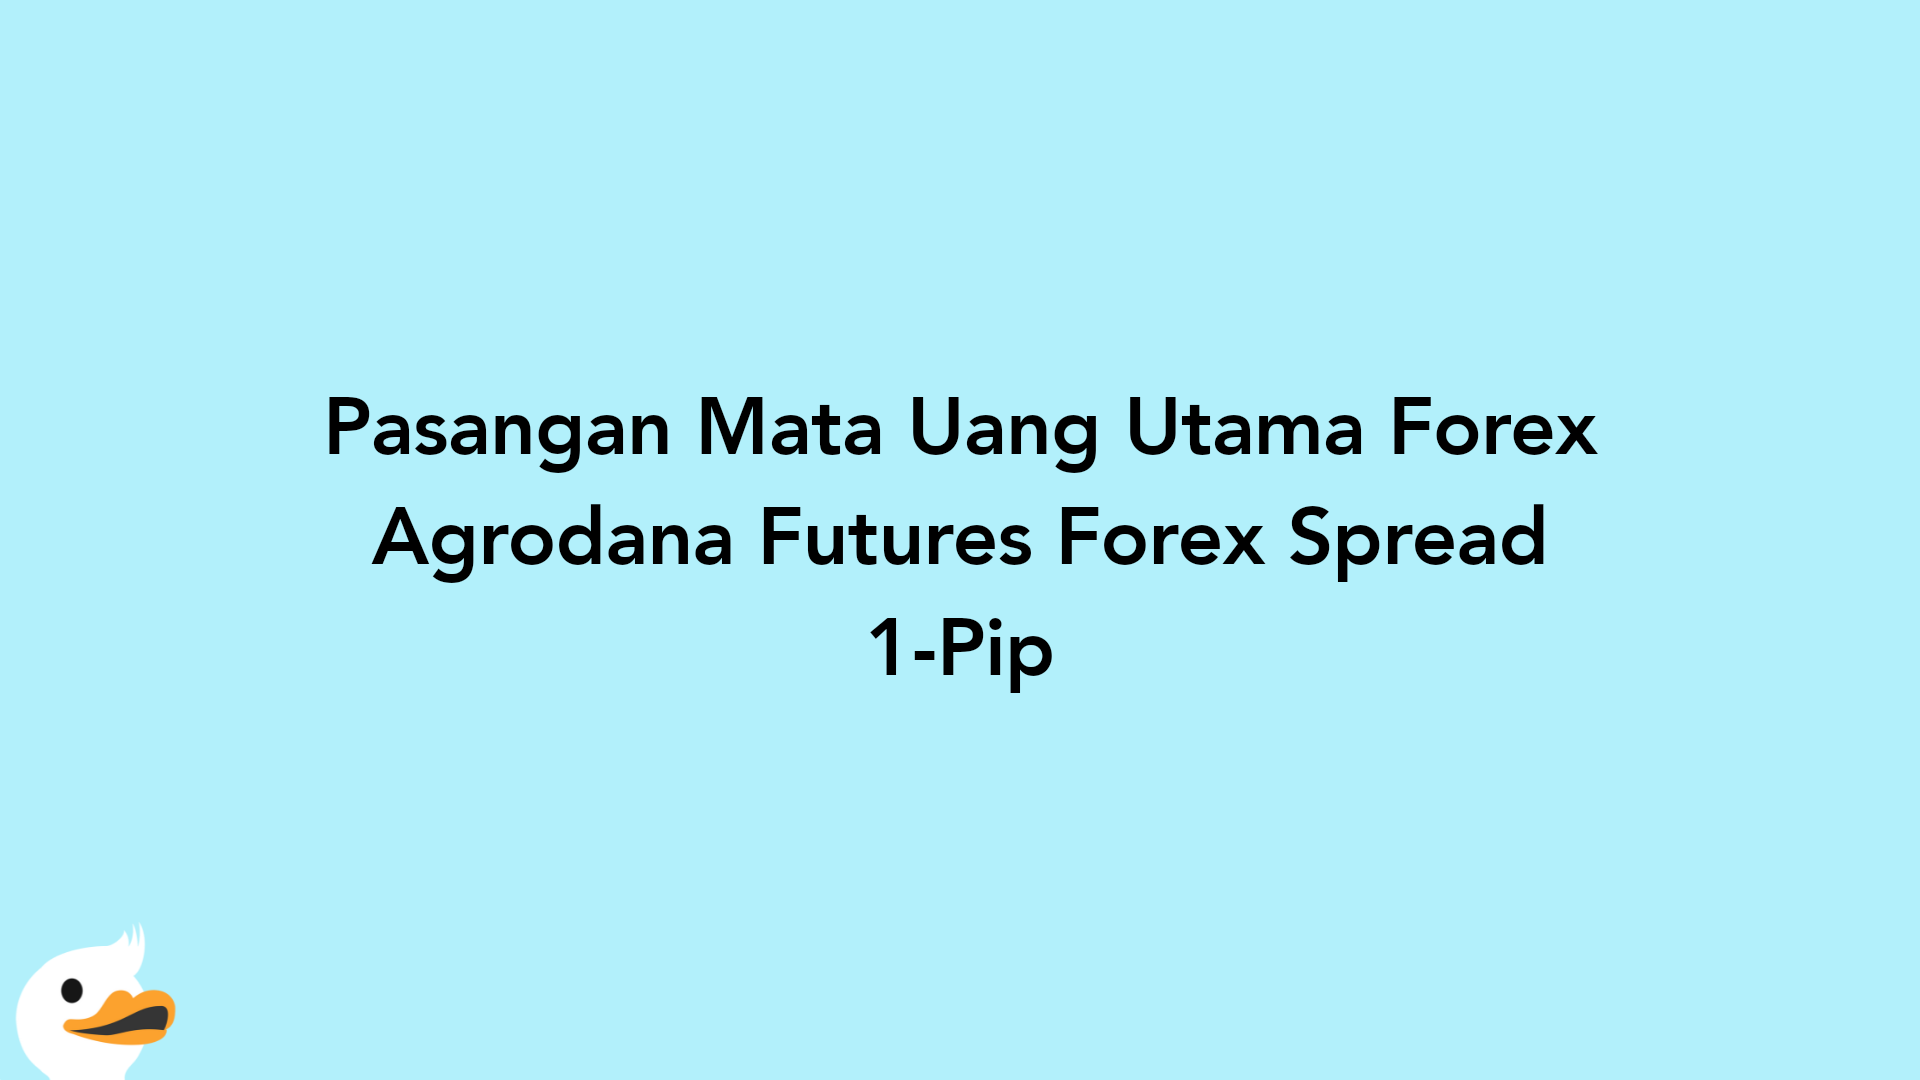 Pasangan Mata Uang Utama Forex Agrodana Futures Forex Spread 1-Pip